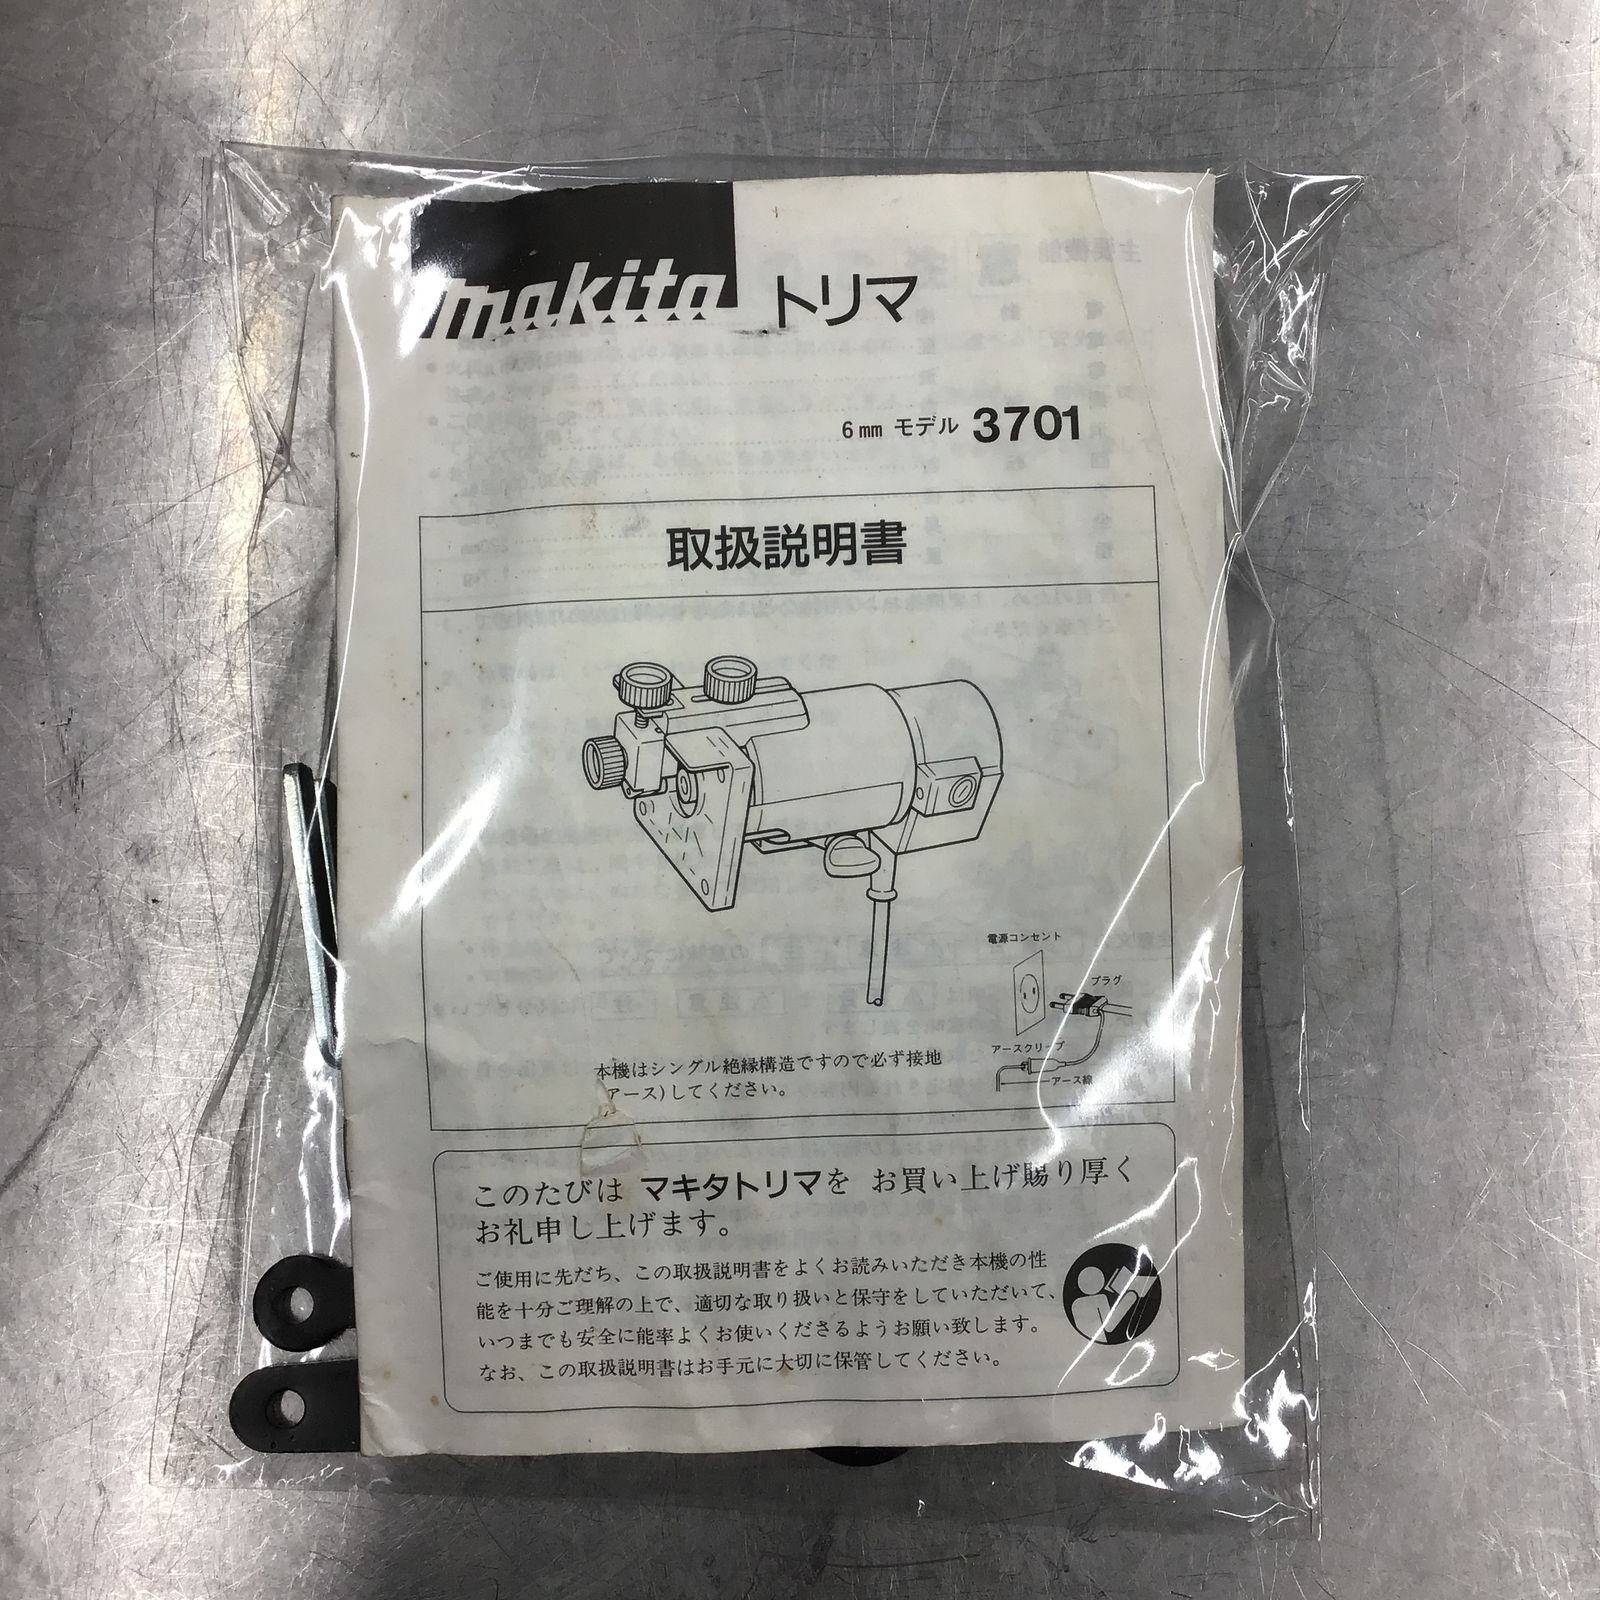 〇マキタ(makita) トリマ 6mm 3701【桶川店】 アクトツール【プロ用の中古工具販売】 メルカリ